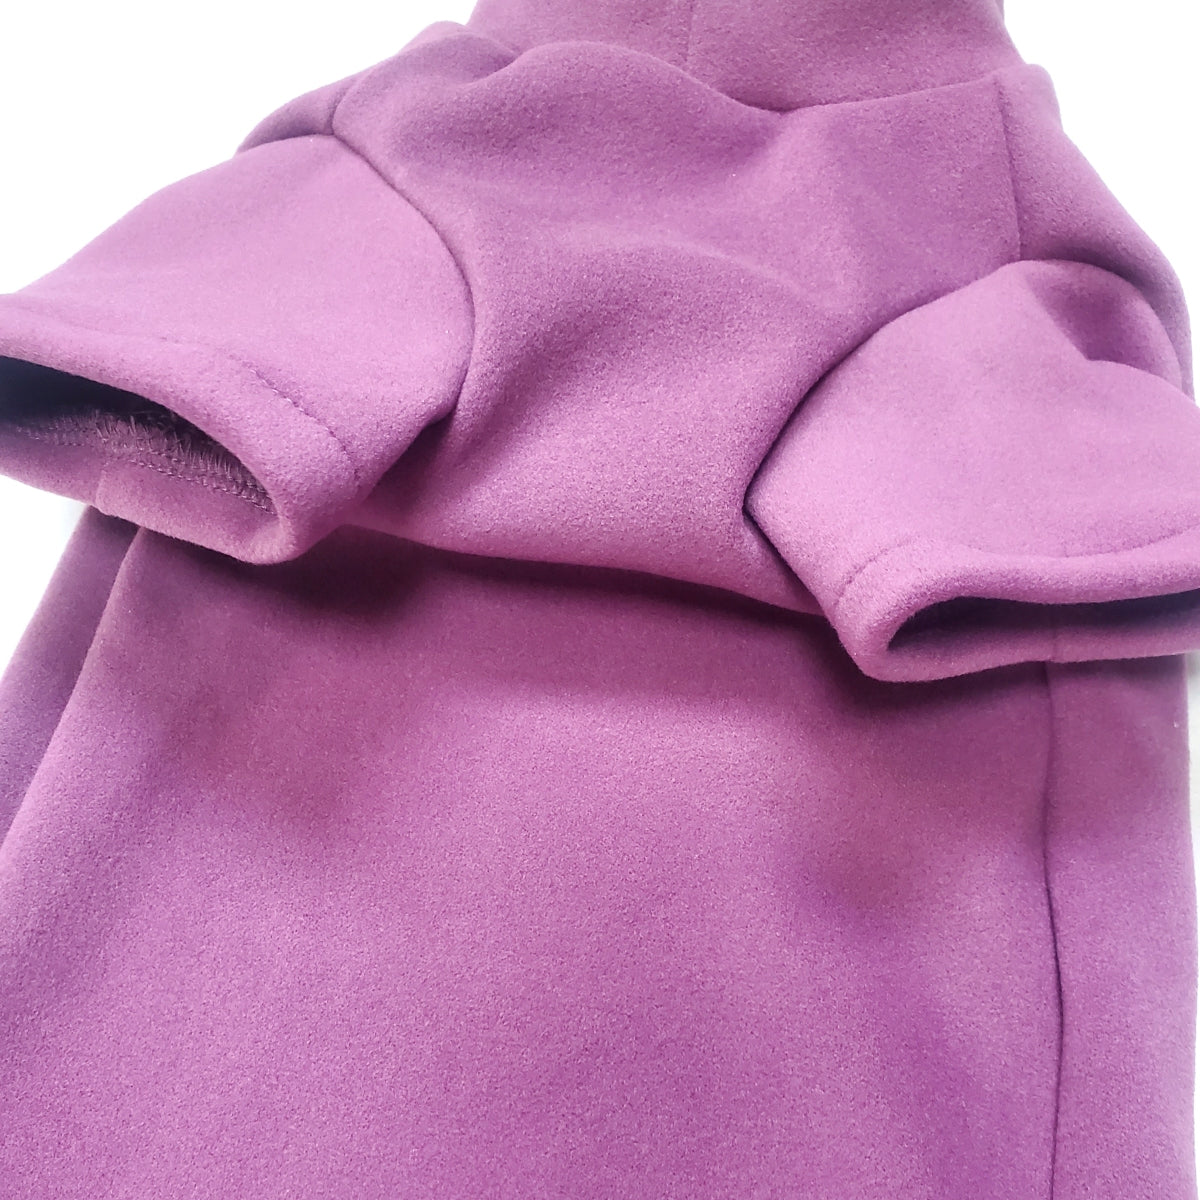 Sphynx Cat Soft Fleece - Purple Mauve